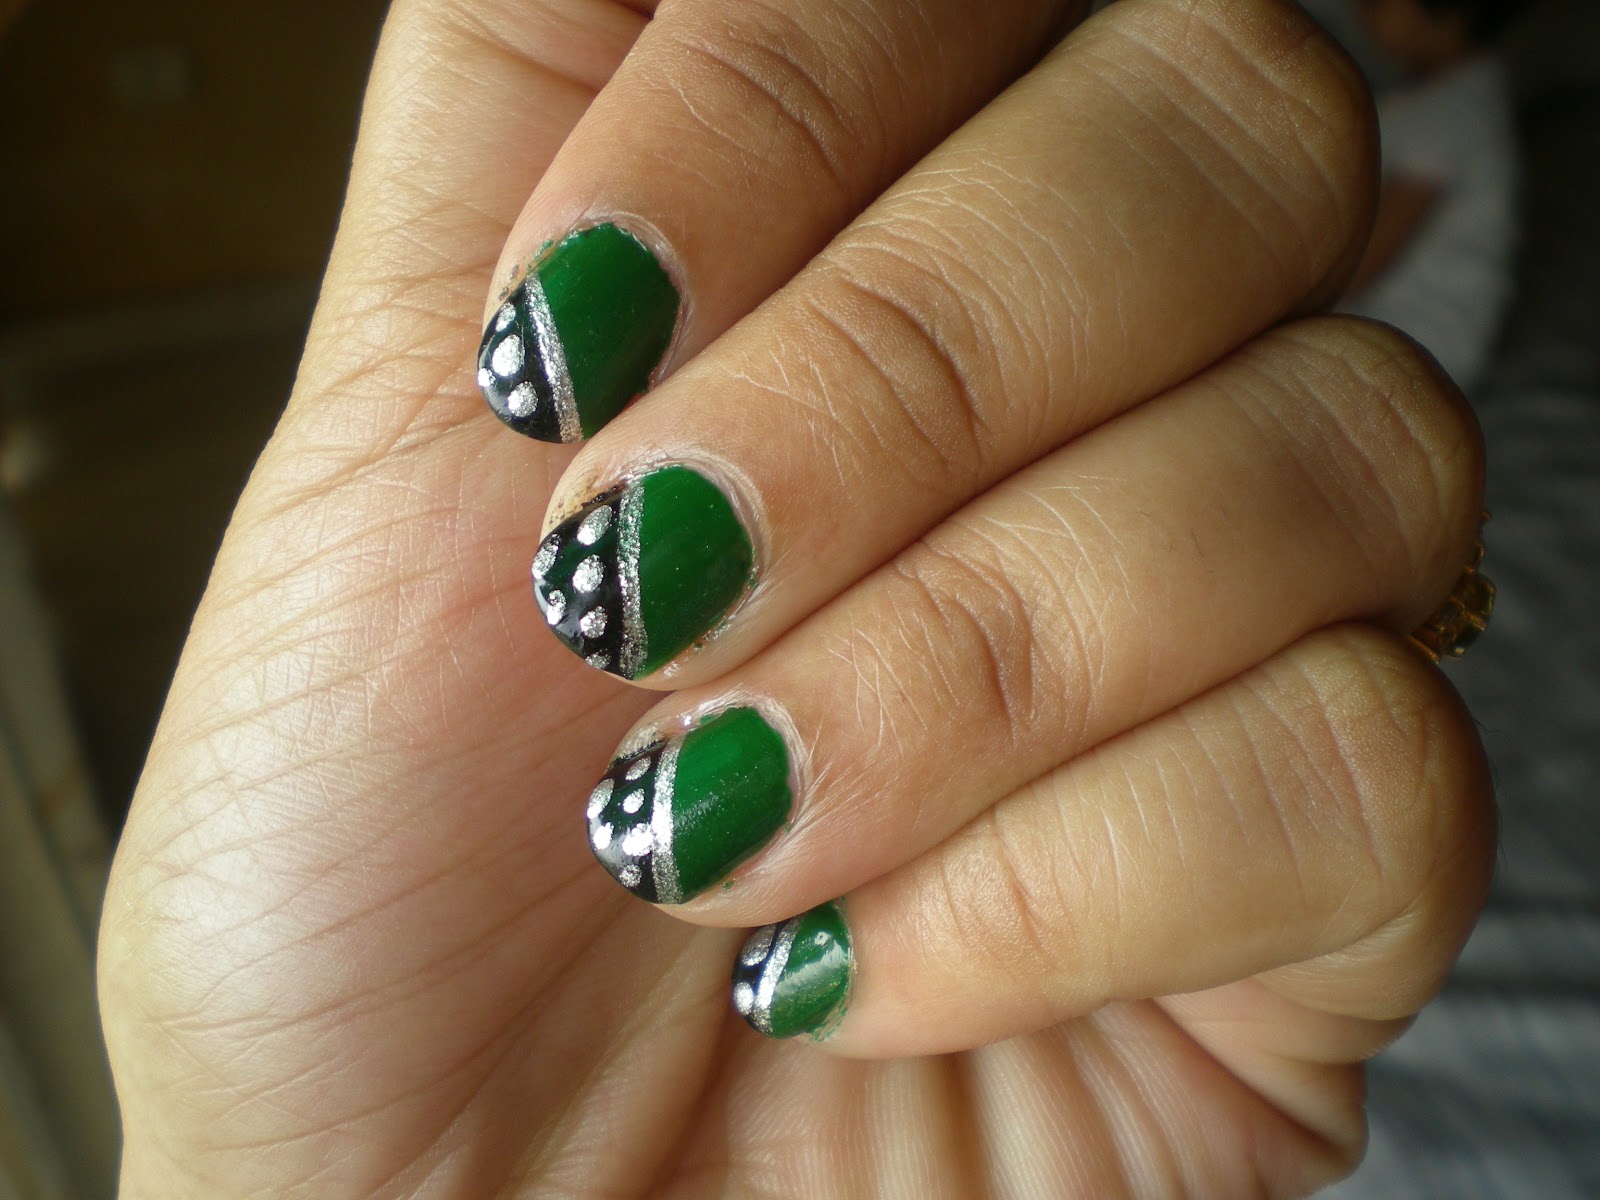 Black and Green Polka Dot Nail Design - wide 6